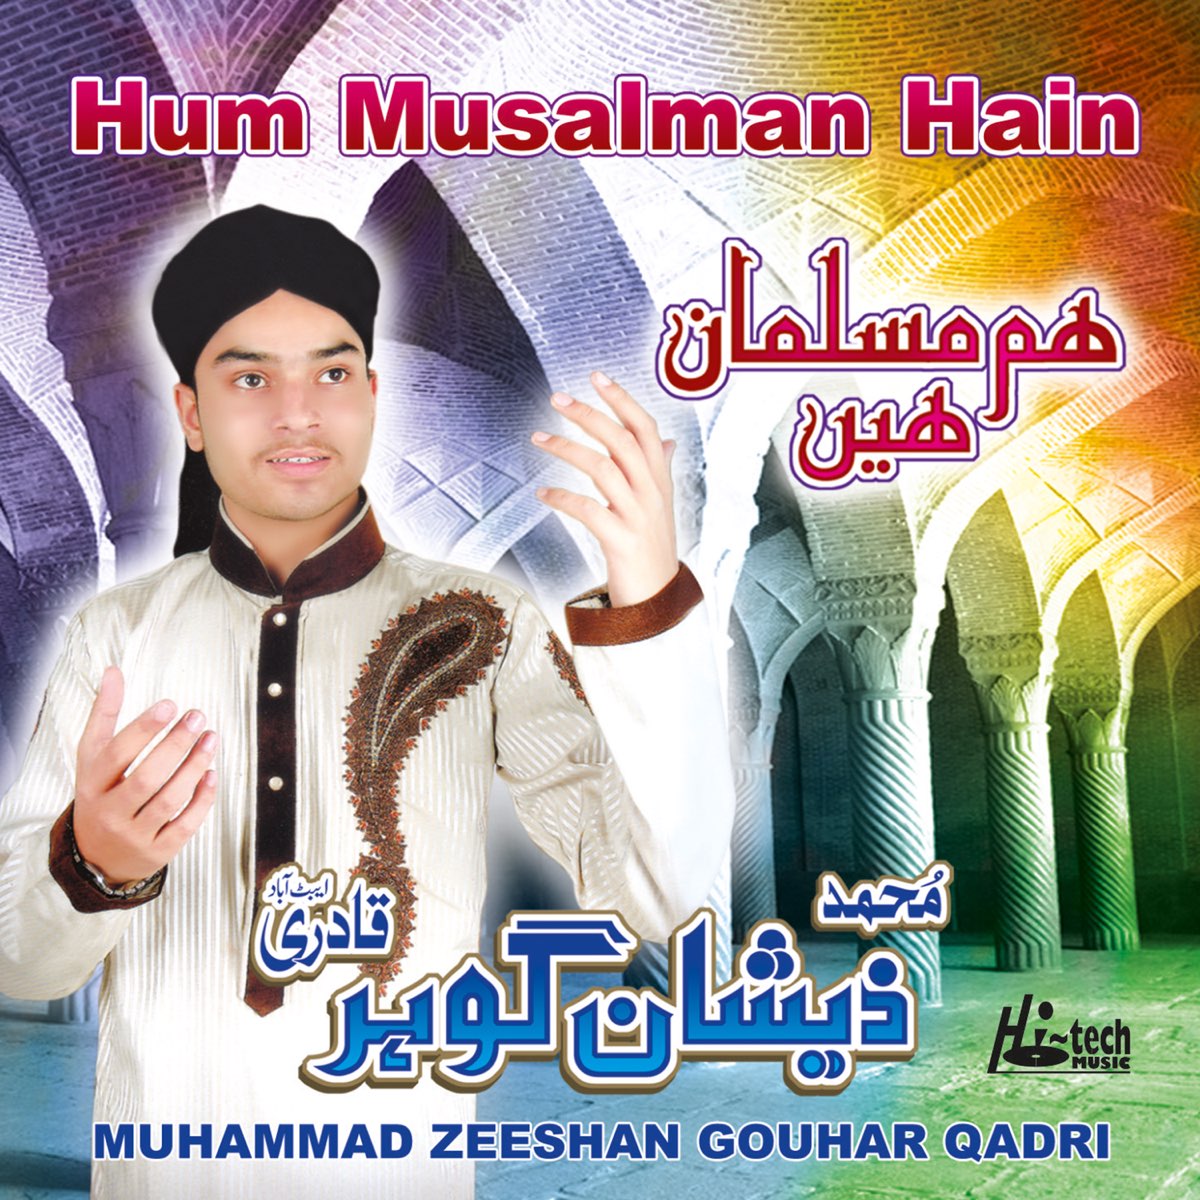 Haan Musalman Hoon Main – Upload On | The Indian Distribution